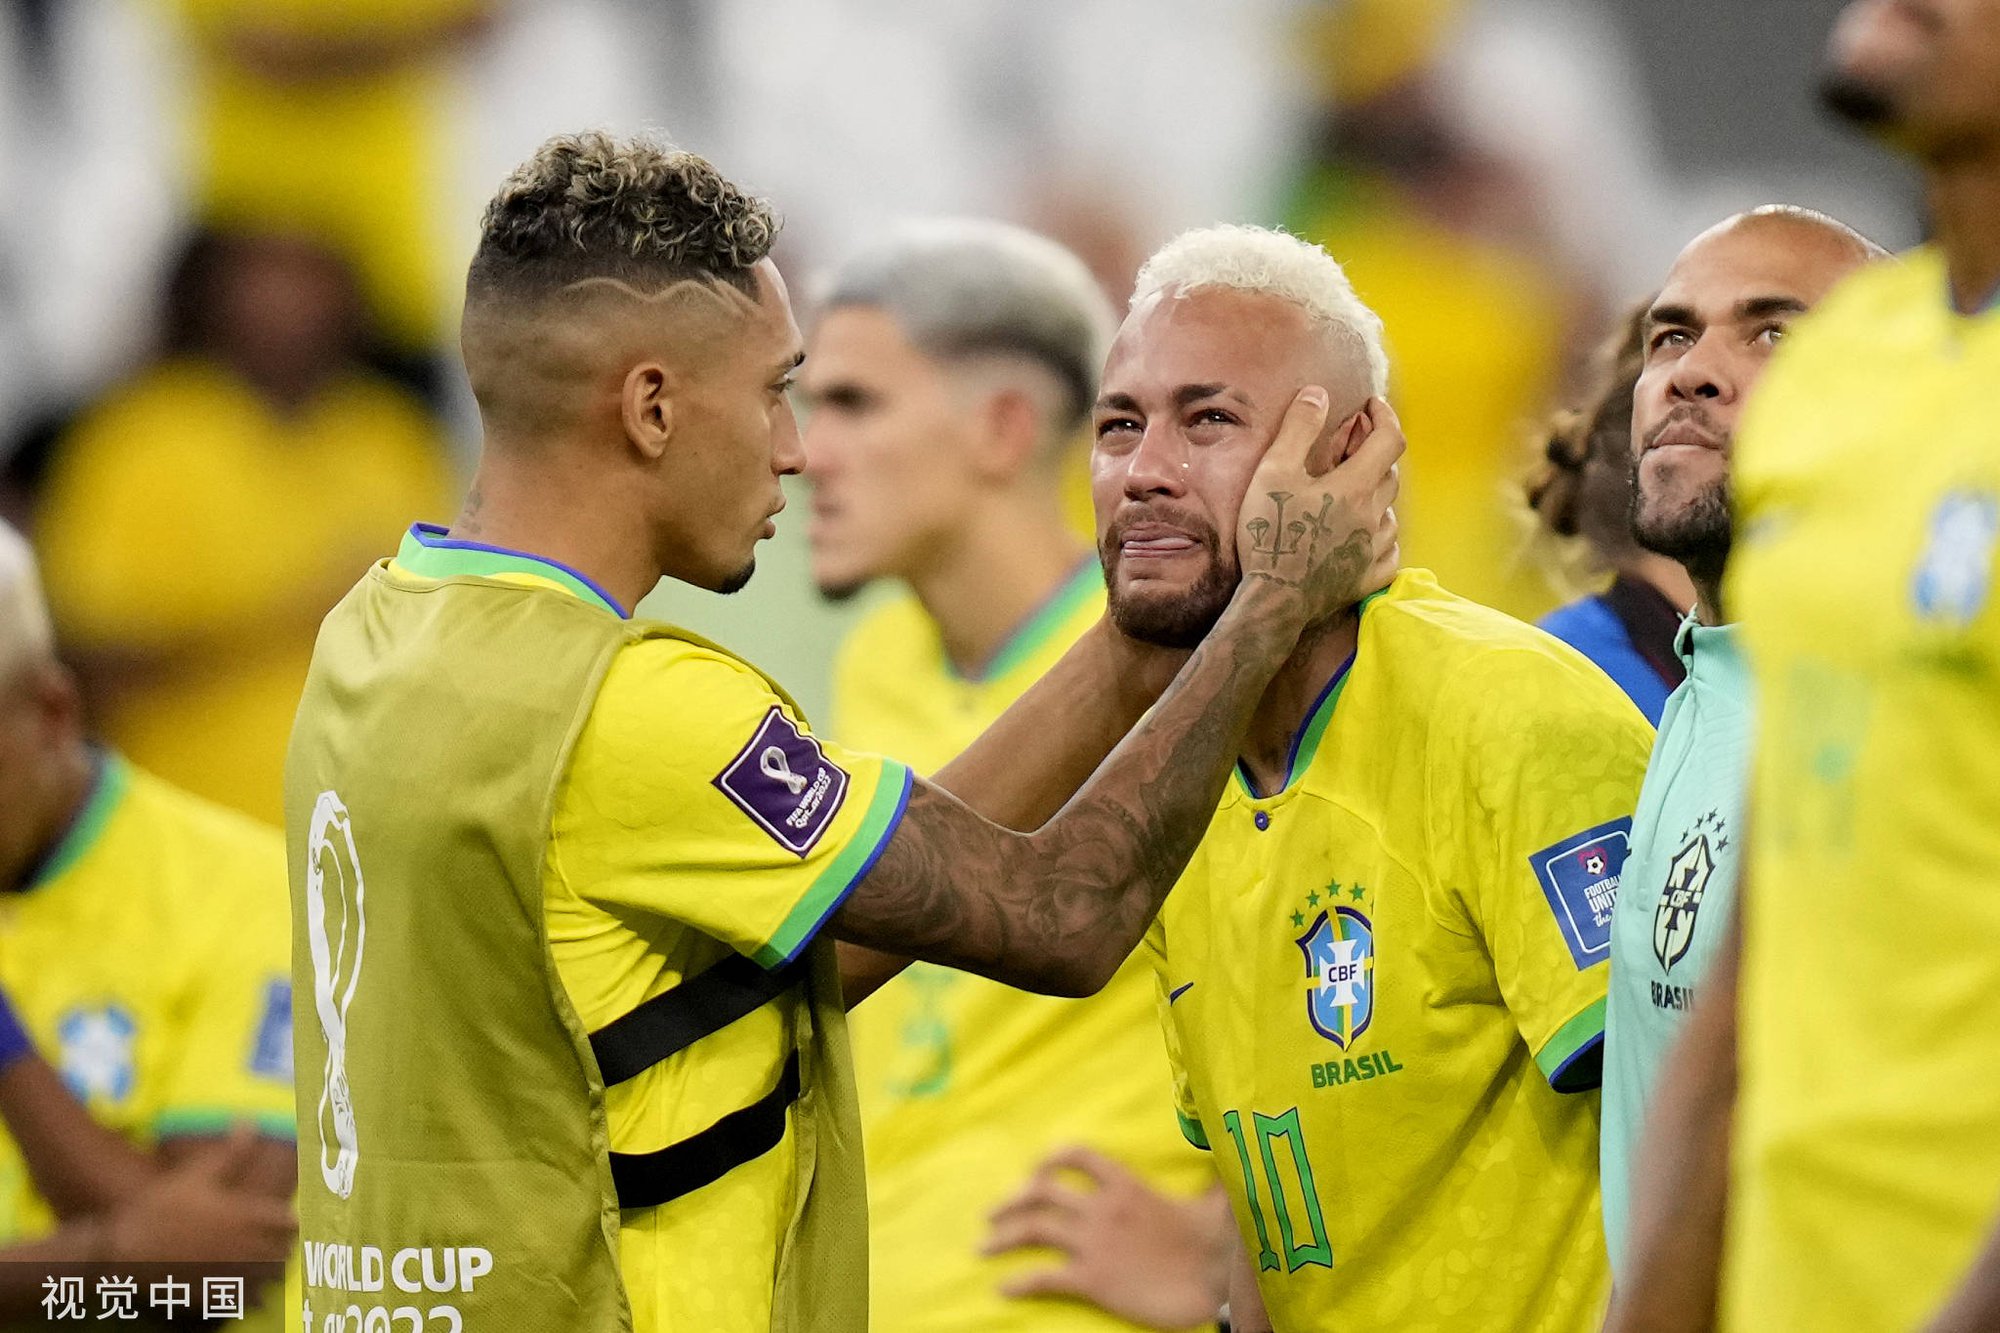 Hãy chiêm ngưỡng các trình diễn tài năng đầy mào hiểm của Neymar trong hình ảnh này. Chắc chắn bạn sẽ bị thu hút bởi tốc độ và kỹ năng của anh chàng trong màu áo PSG.